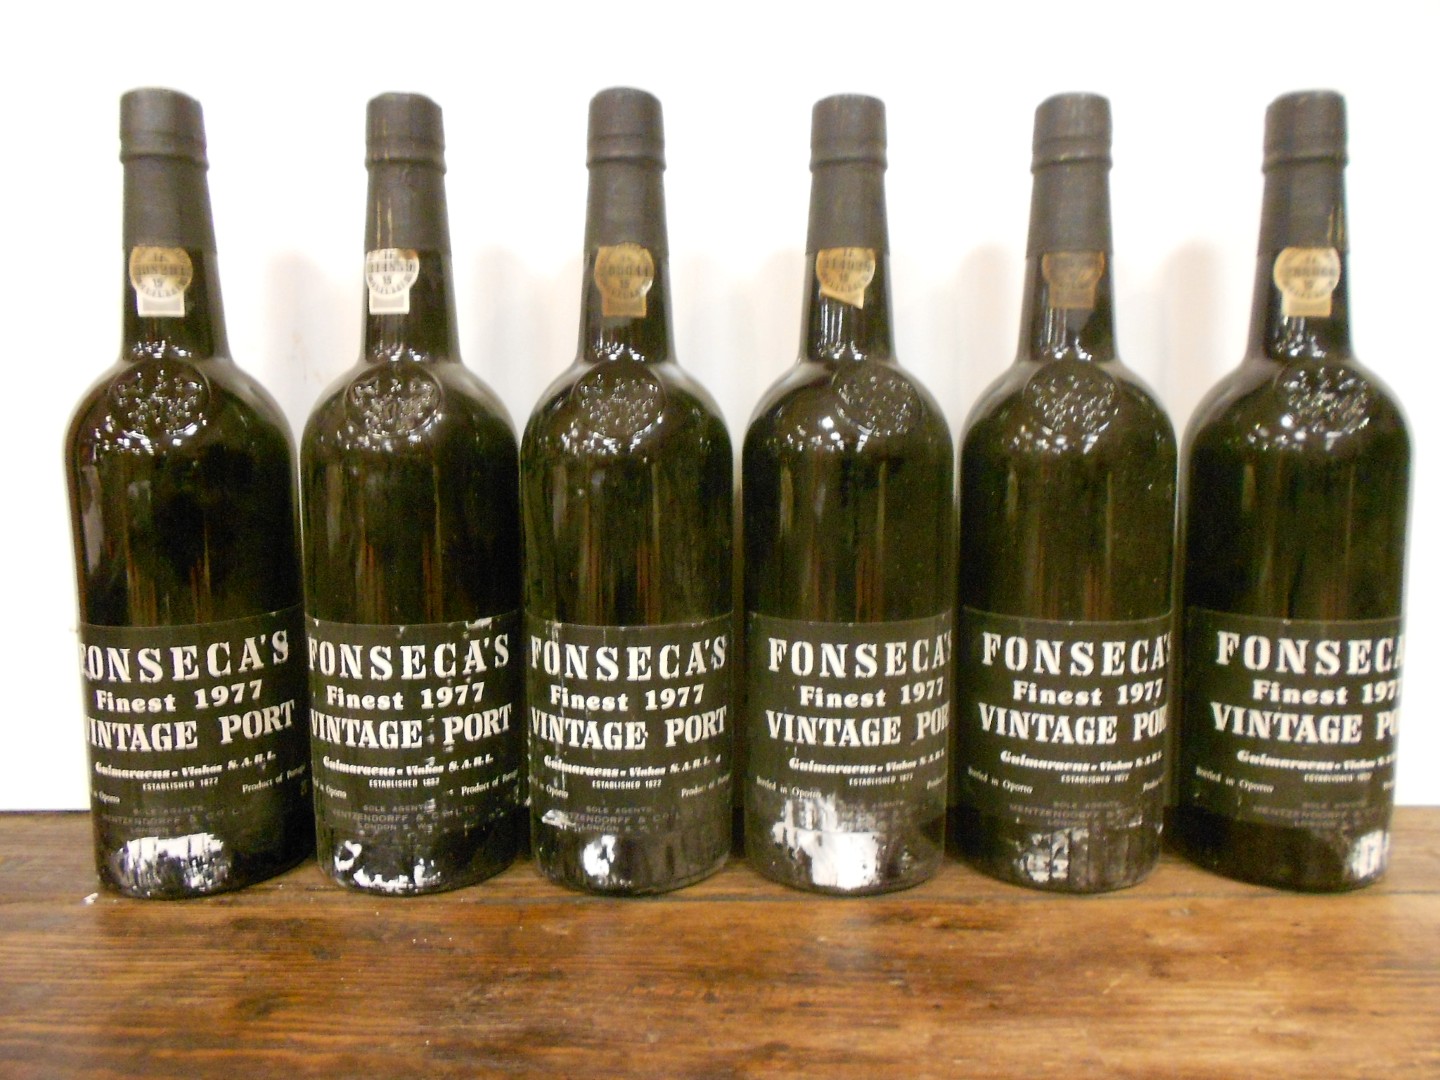 Fonseca Vintage Port 1977, twelve bottles. Removed from a college cellar